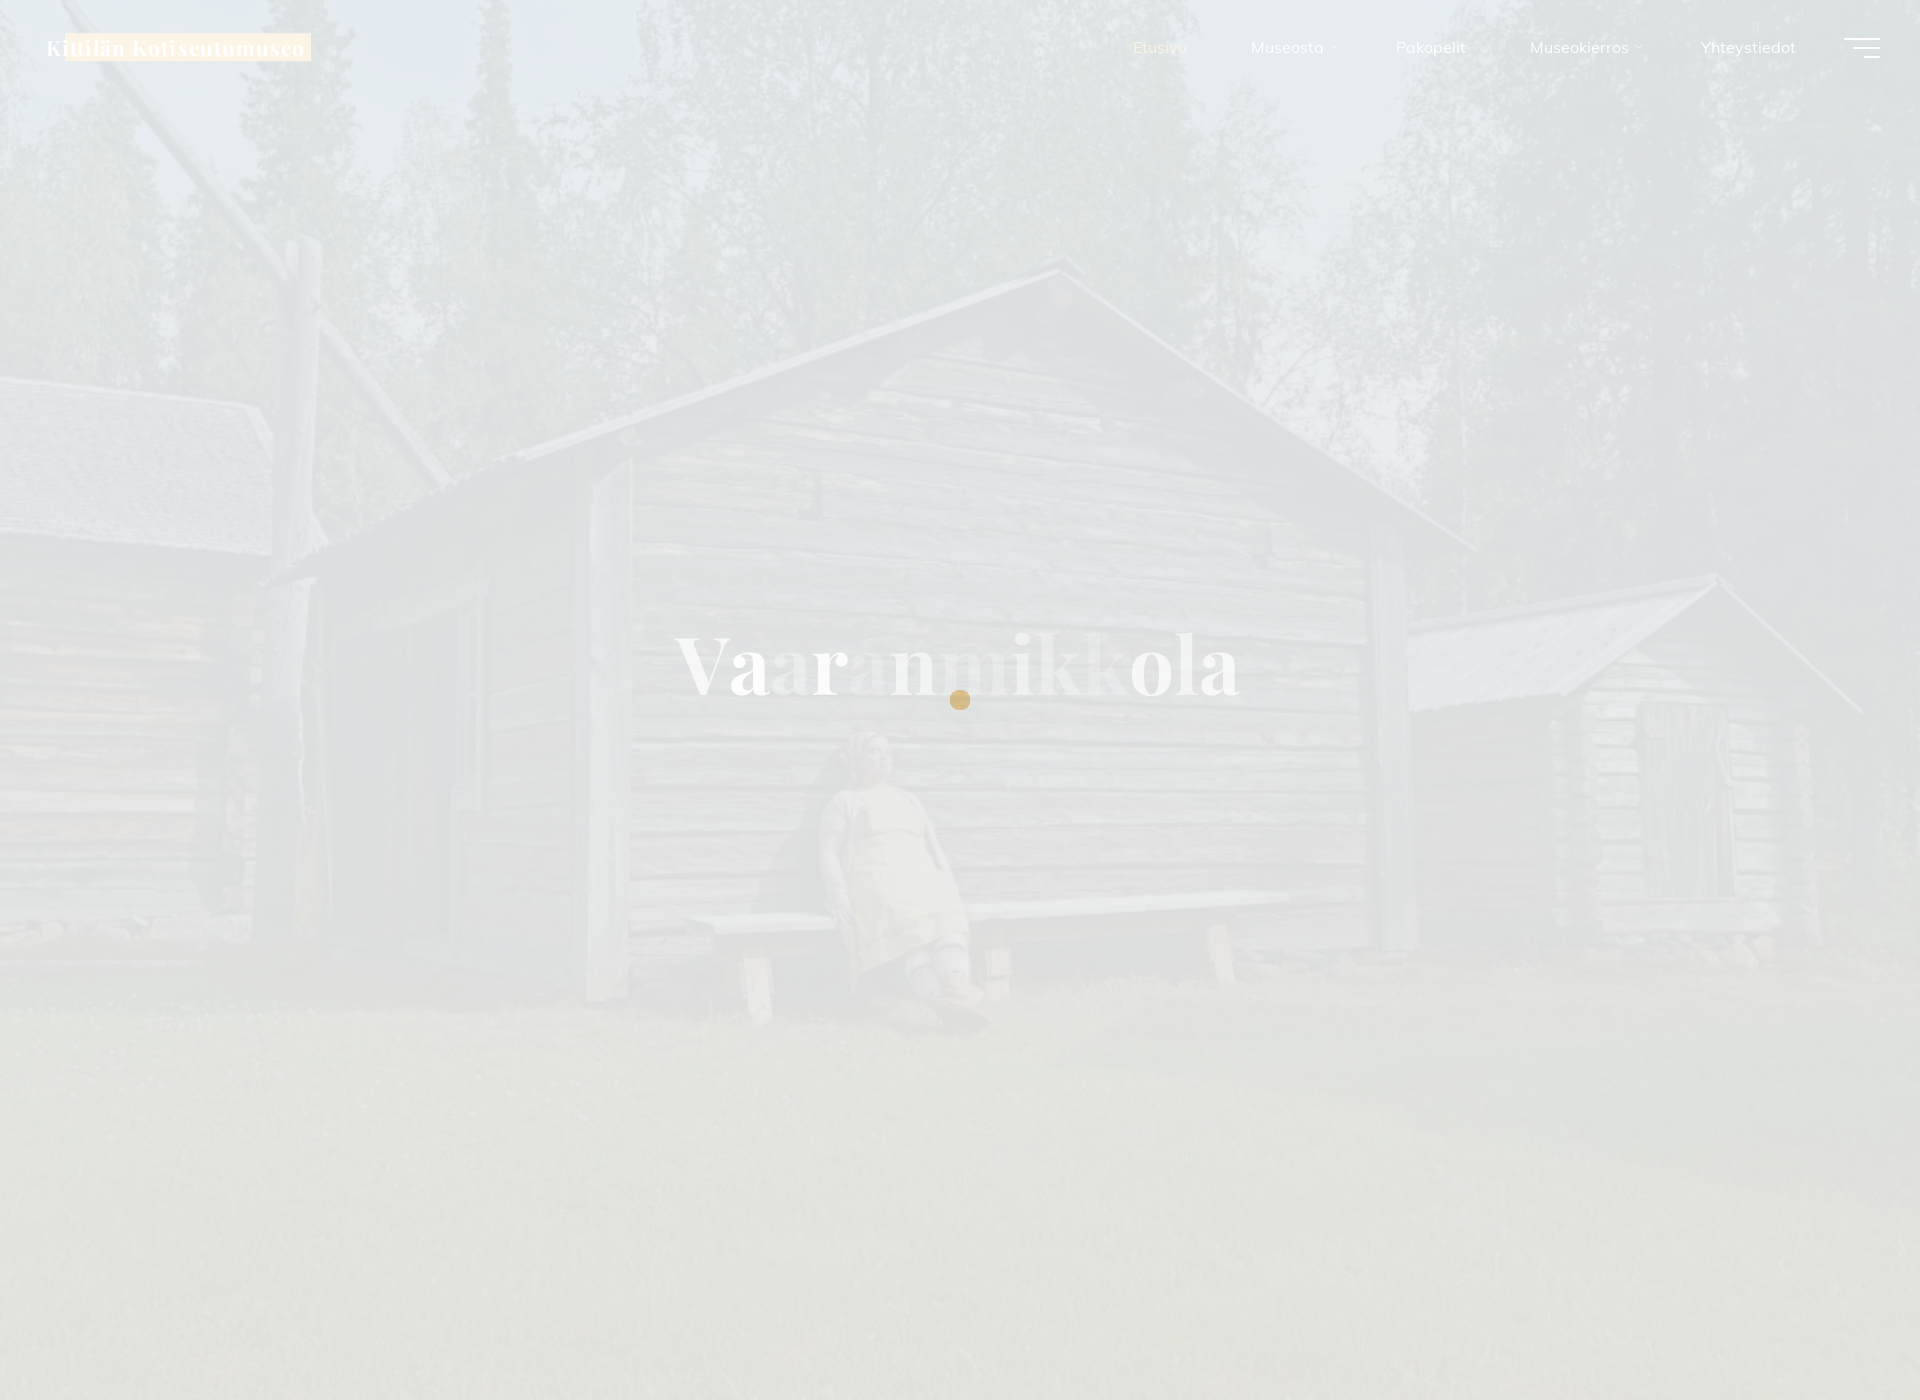 Screenshot for vaaranmikkola.fi